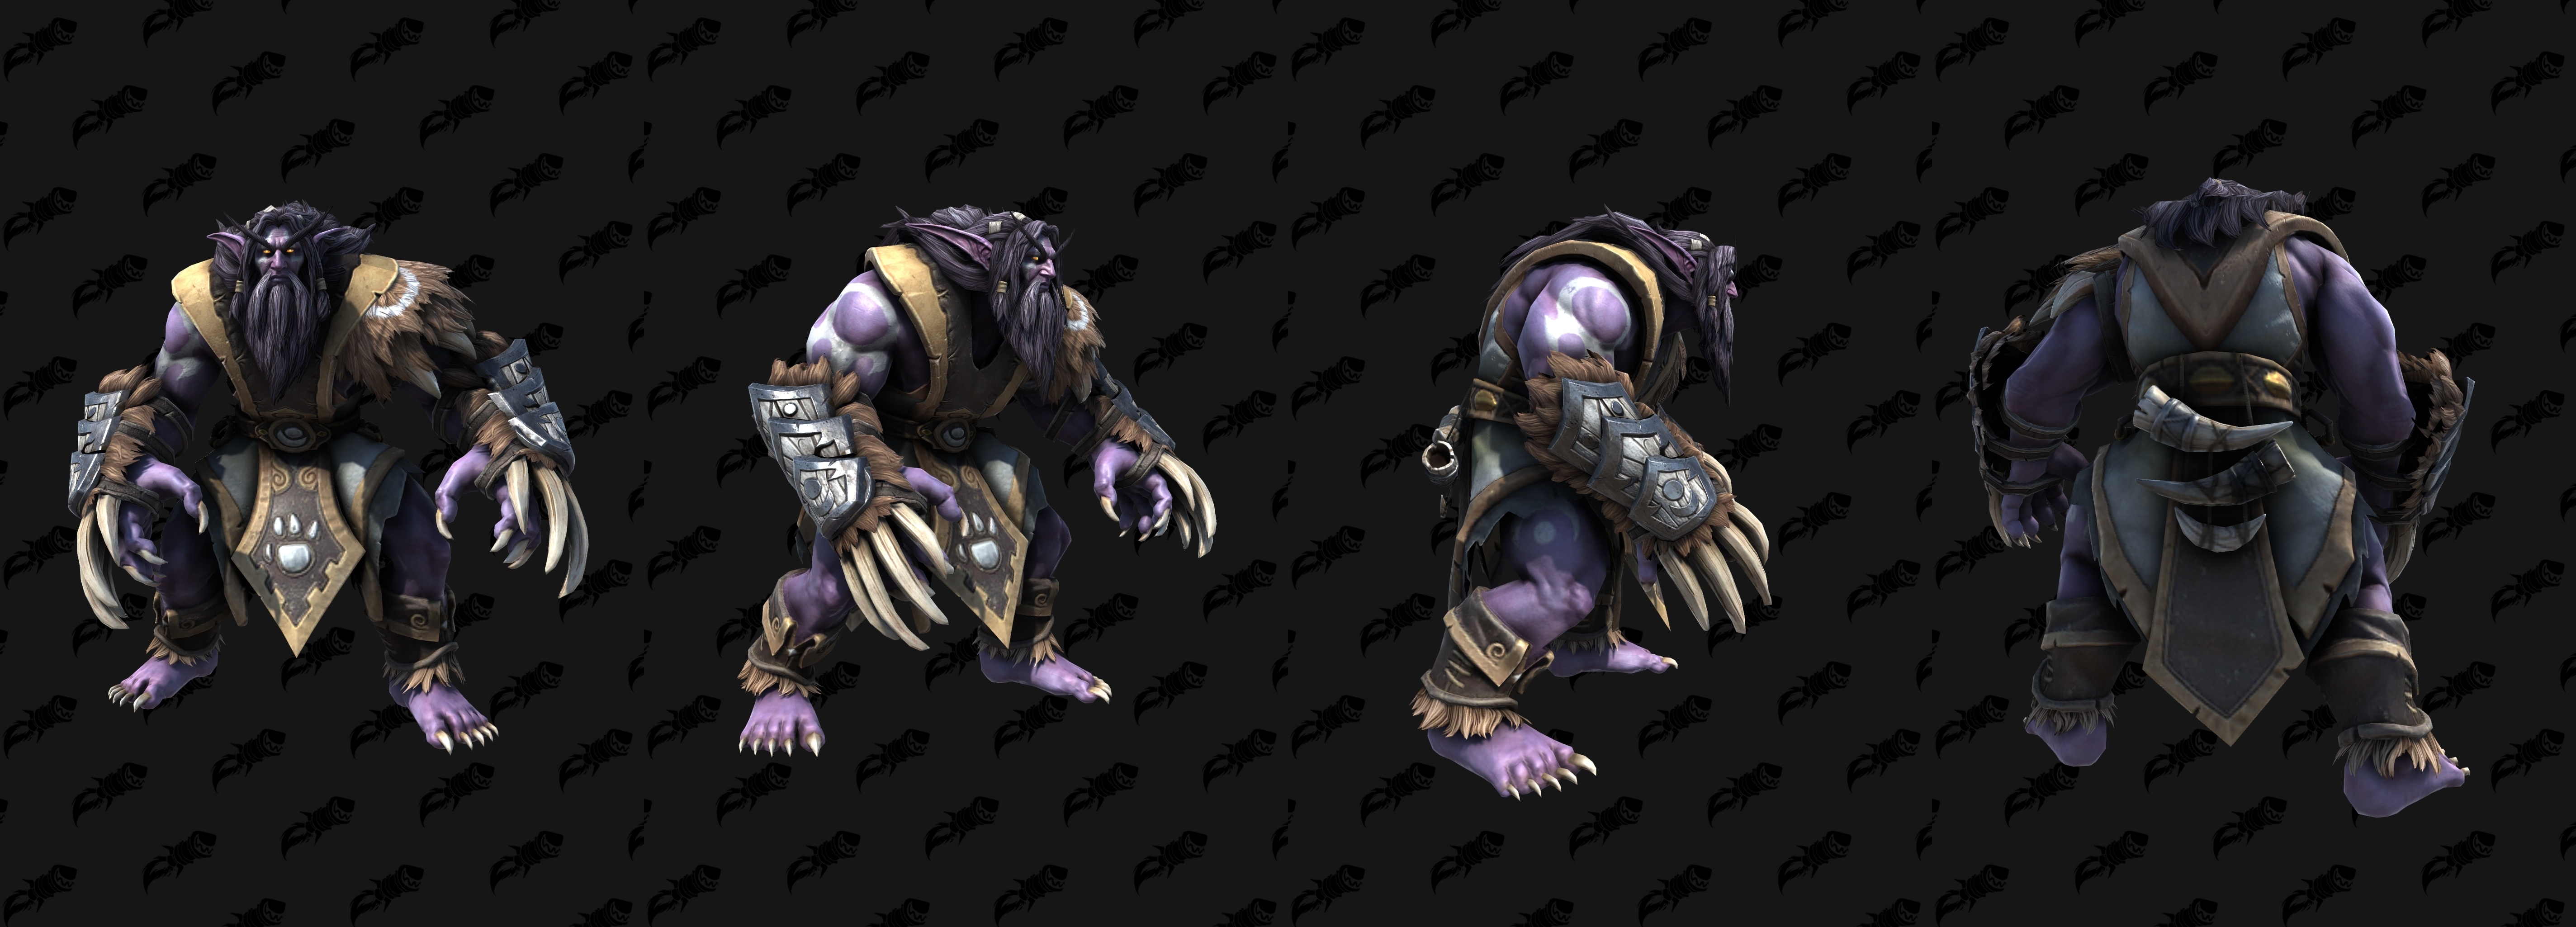 Warcraft 3 герои эльфы